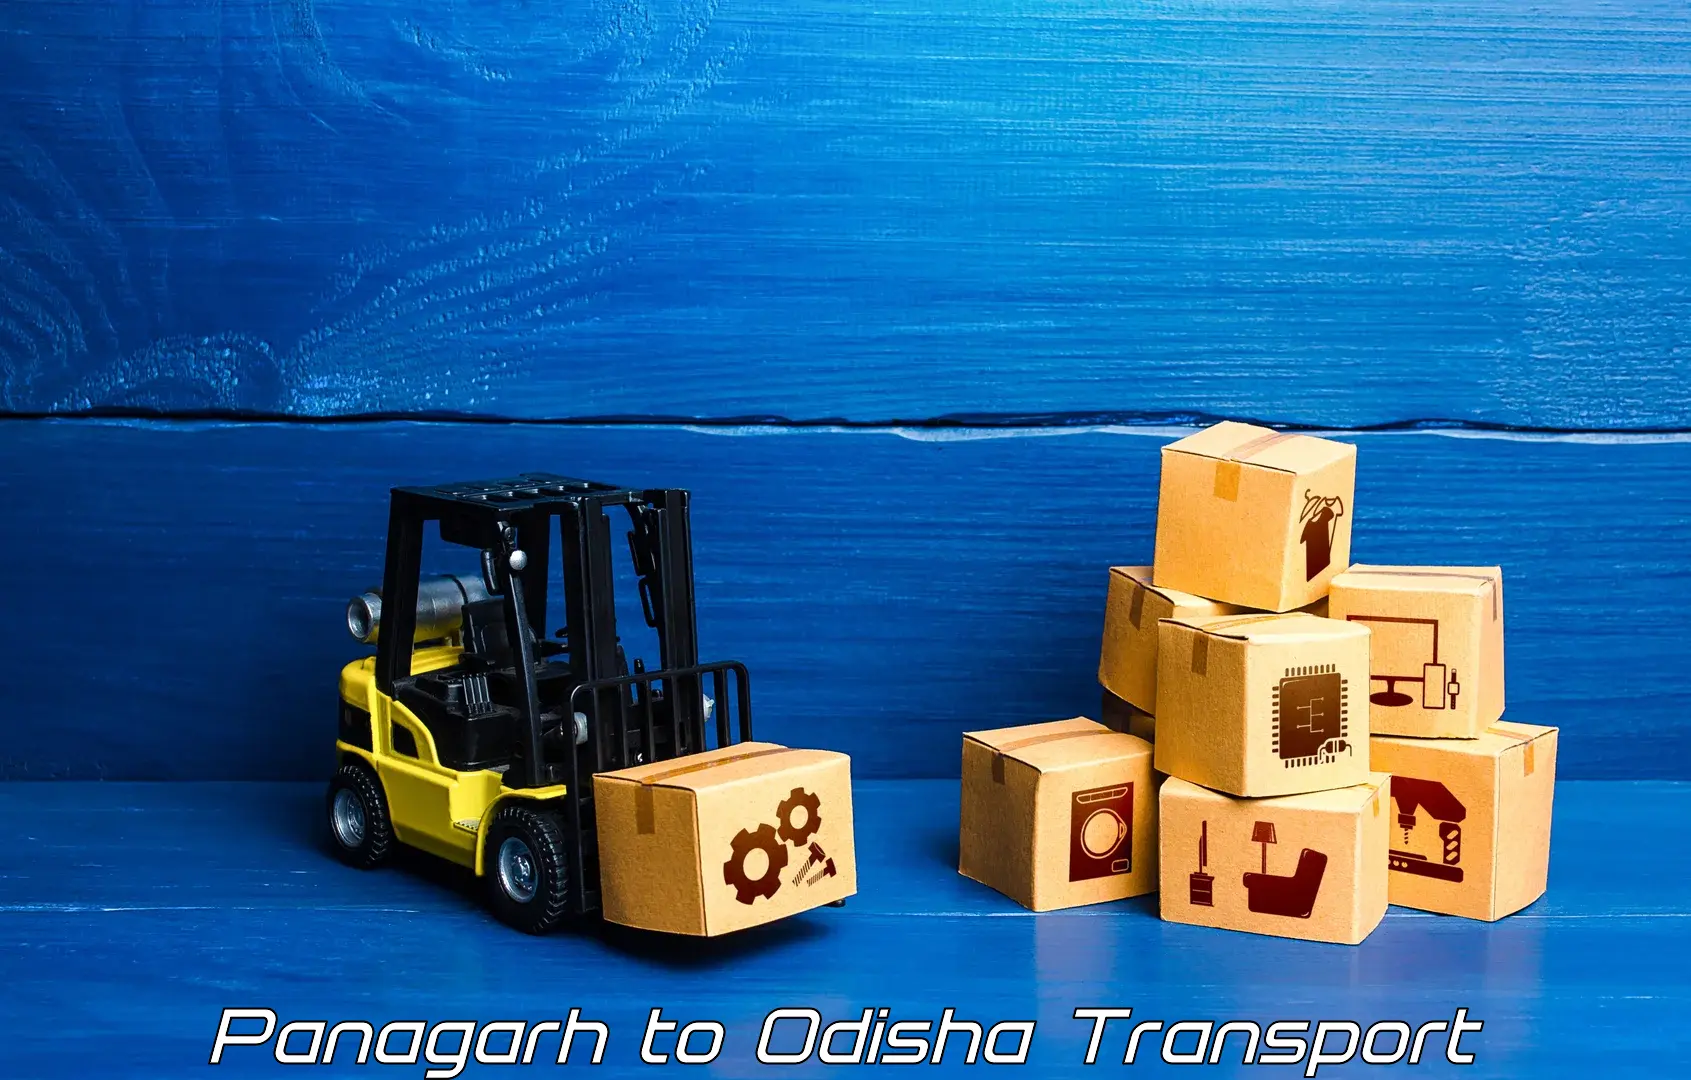 Bike shipping service Panagarh to Odisha